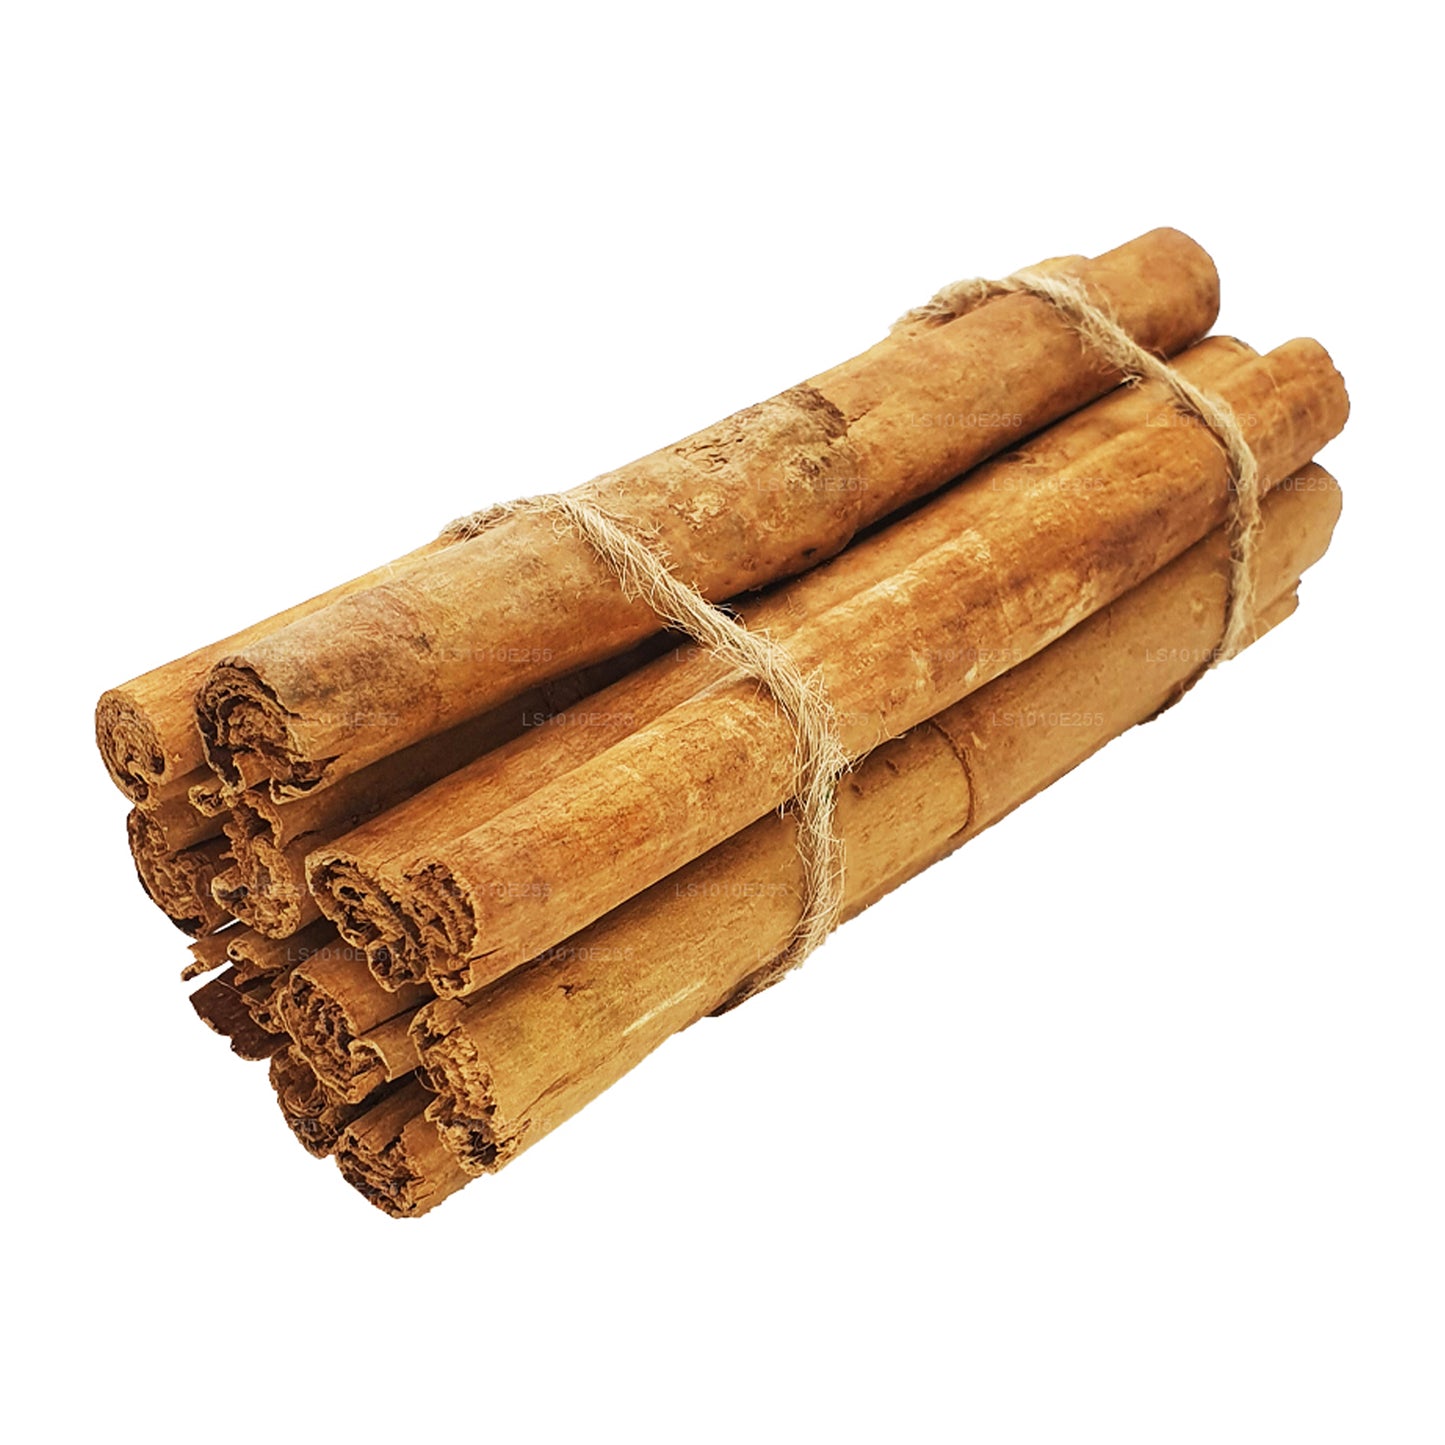 Lakpura "M5 Special" Grade Ceylon True Cinnamon Barks Pack